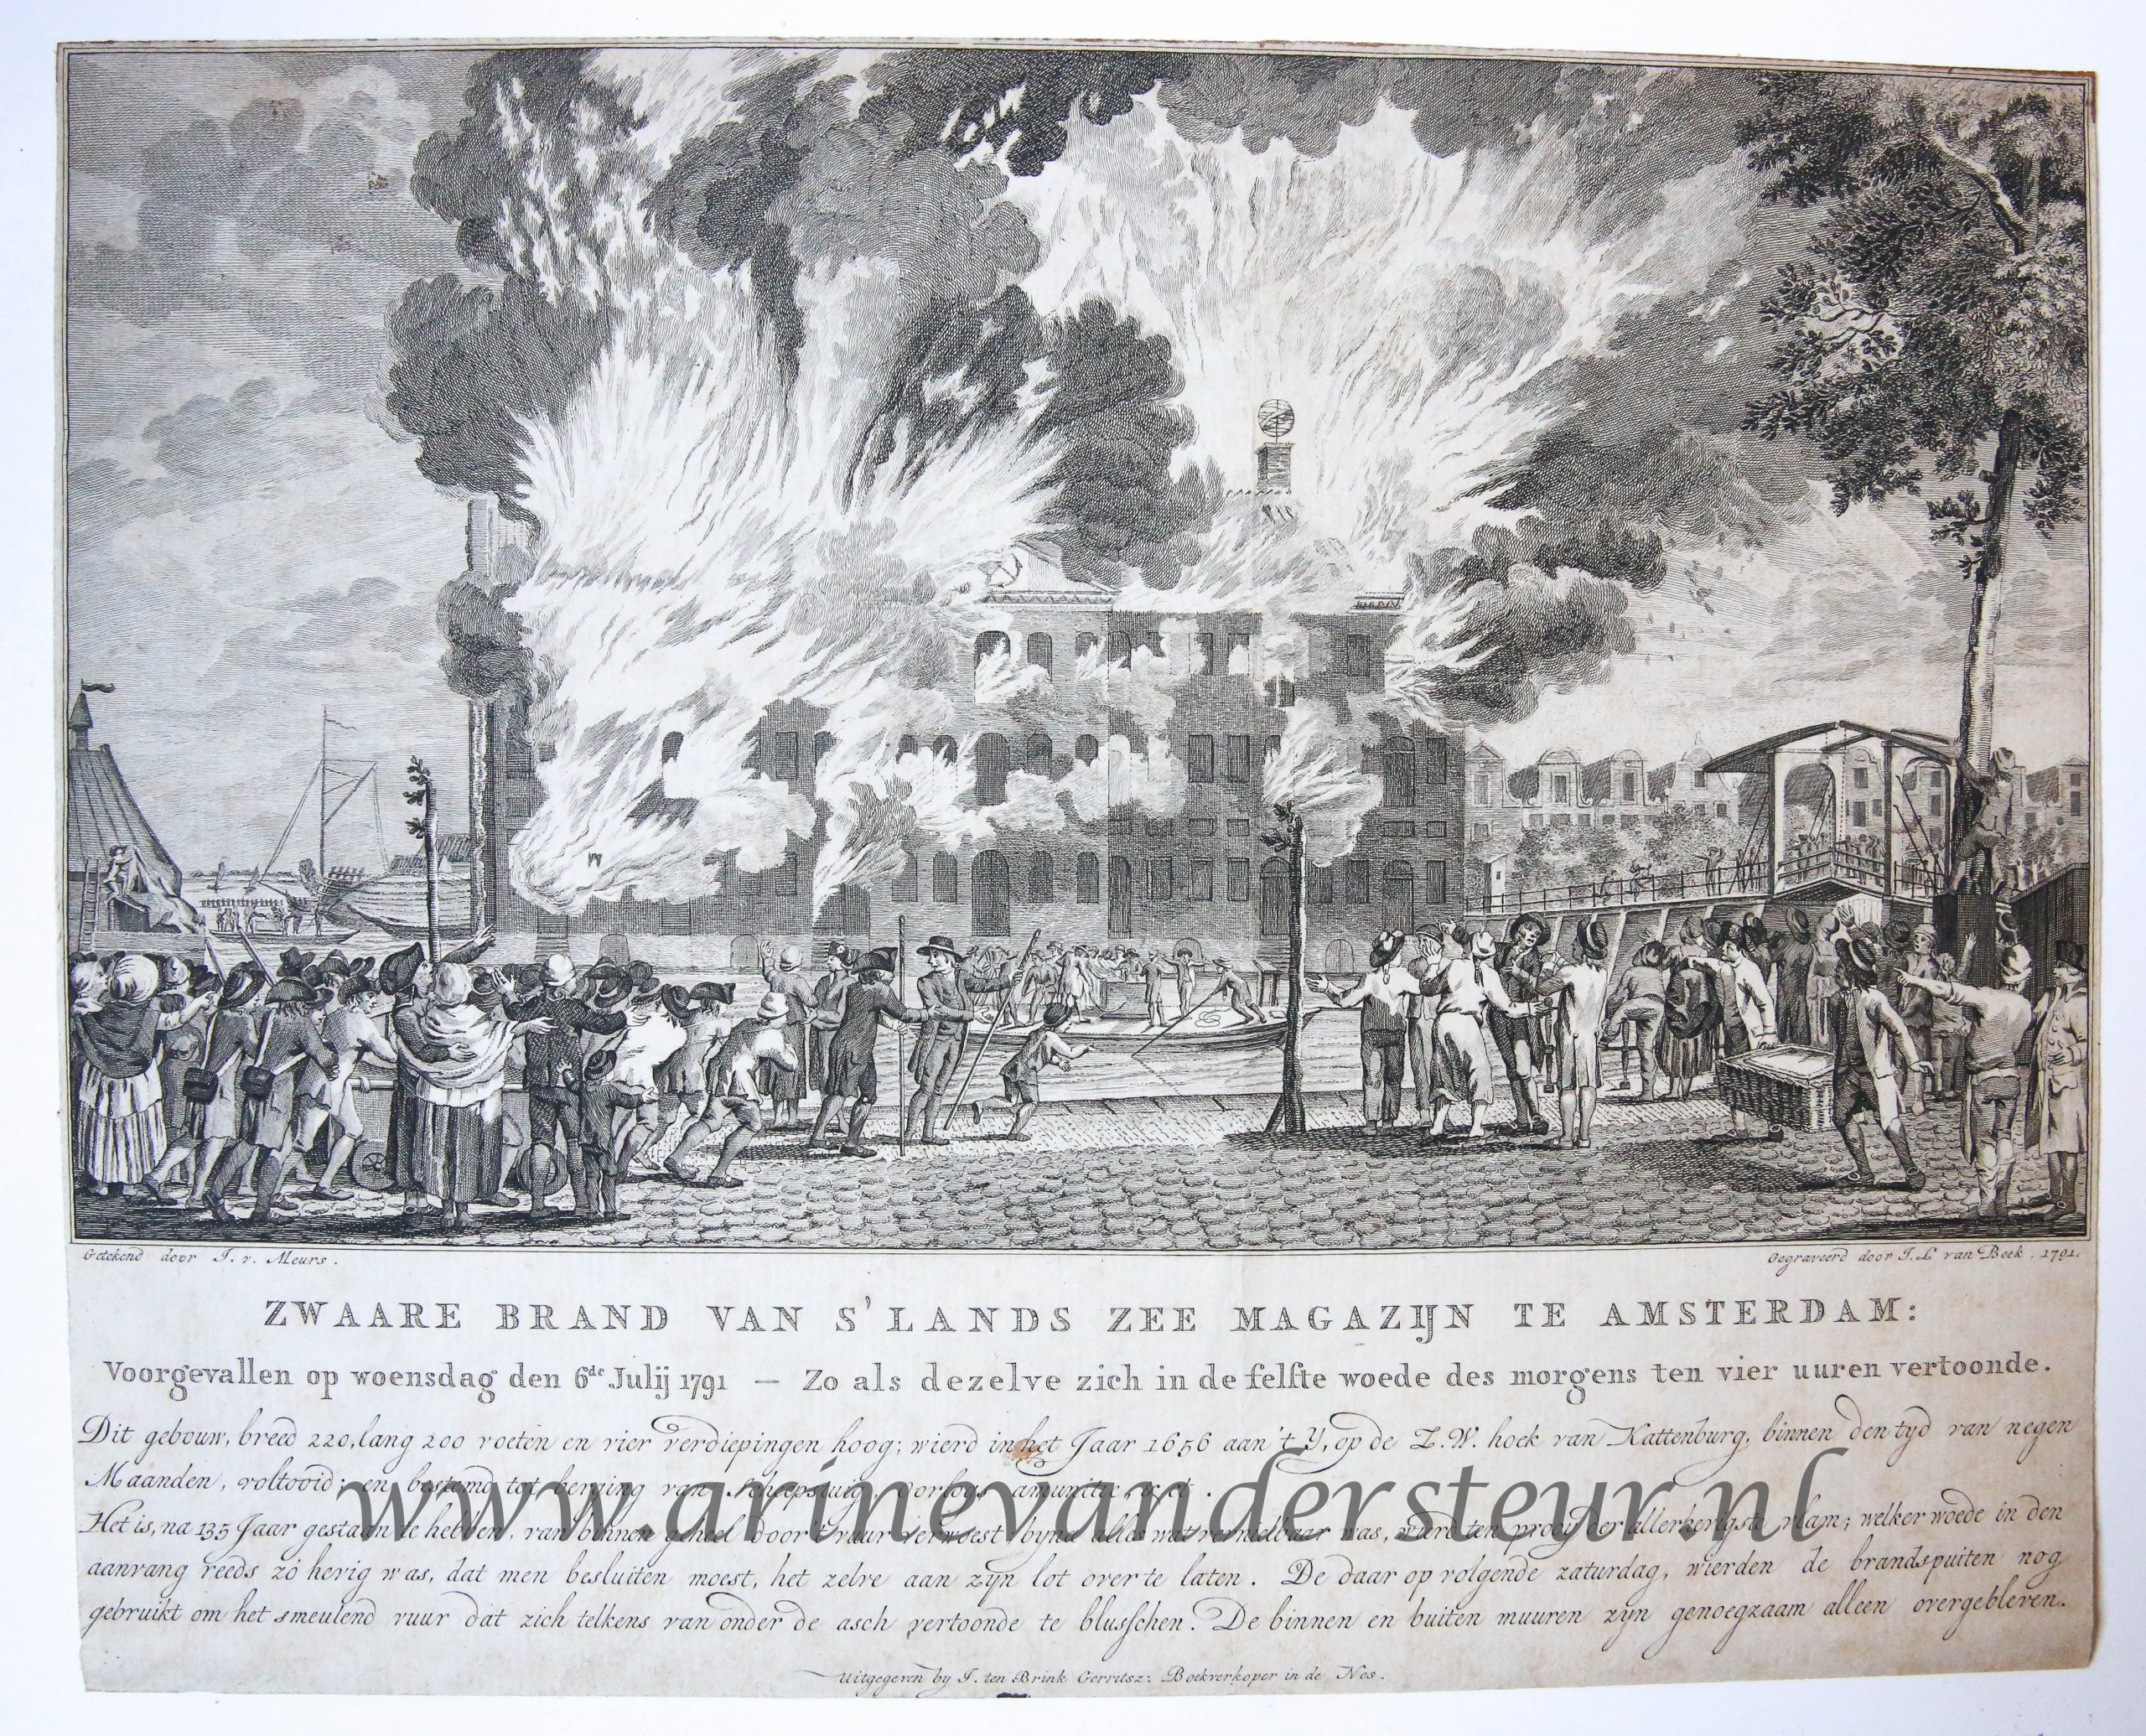  - BRAND, AMSTERDAM, ZEEMAGAZIJN--- Zwaare brand van 's lands zee magazijn te Amsterdam, voorgevallen 6-7-1791. Gravure, 24x30 cm., door J.L. van Beek naar J. v. Meurs, 1791.